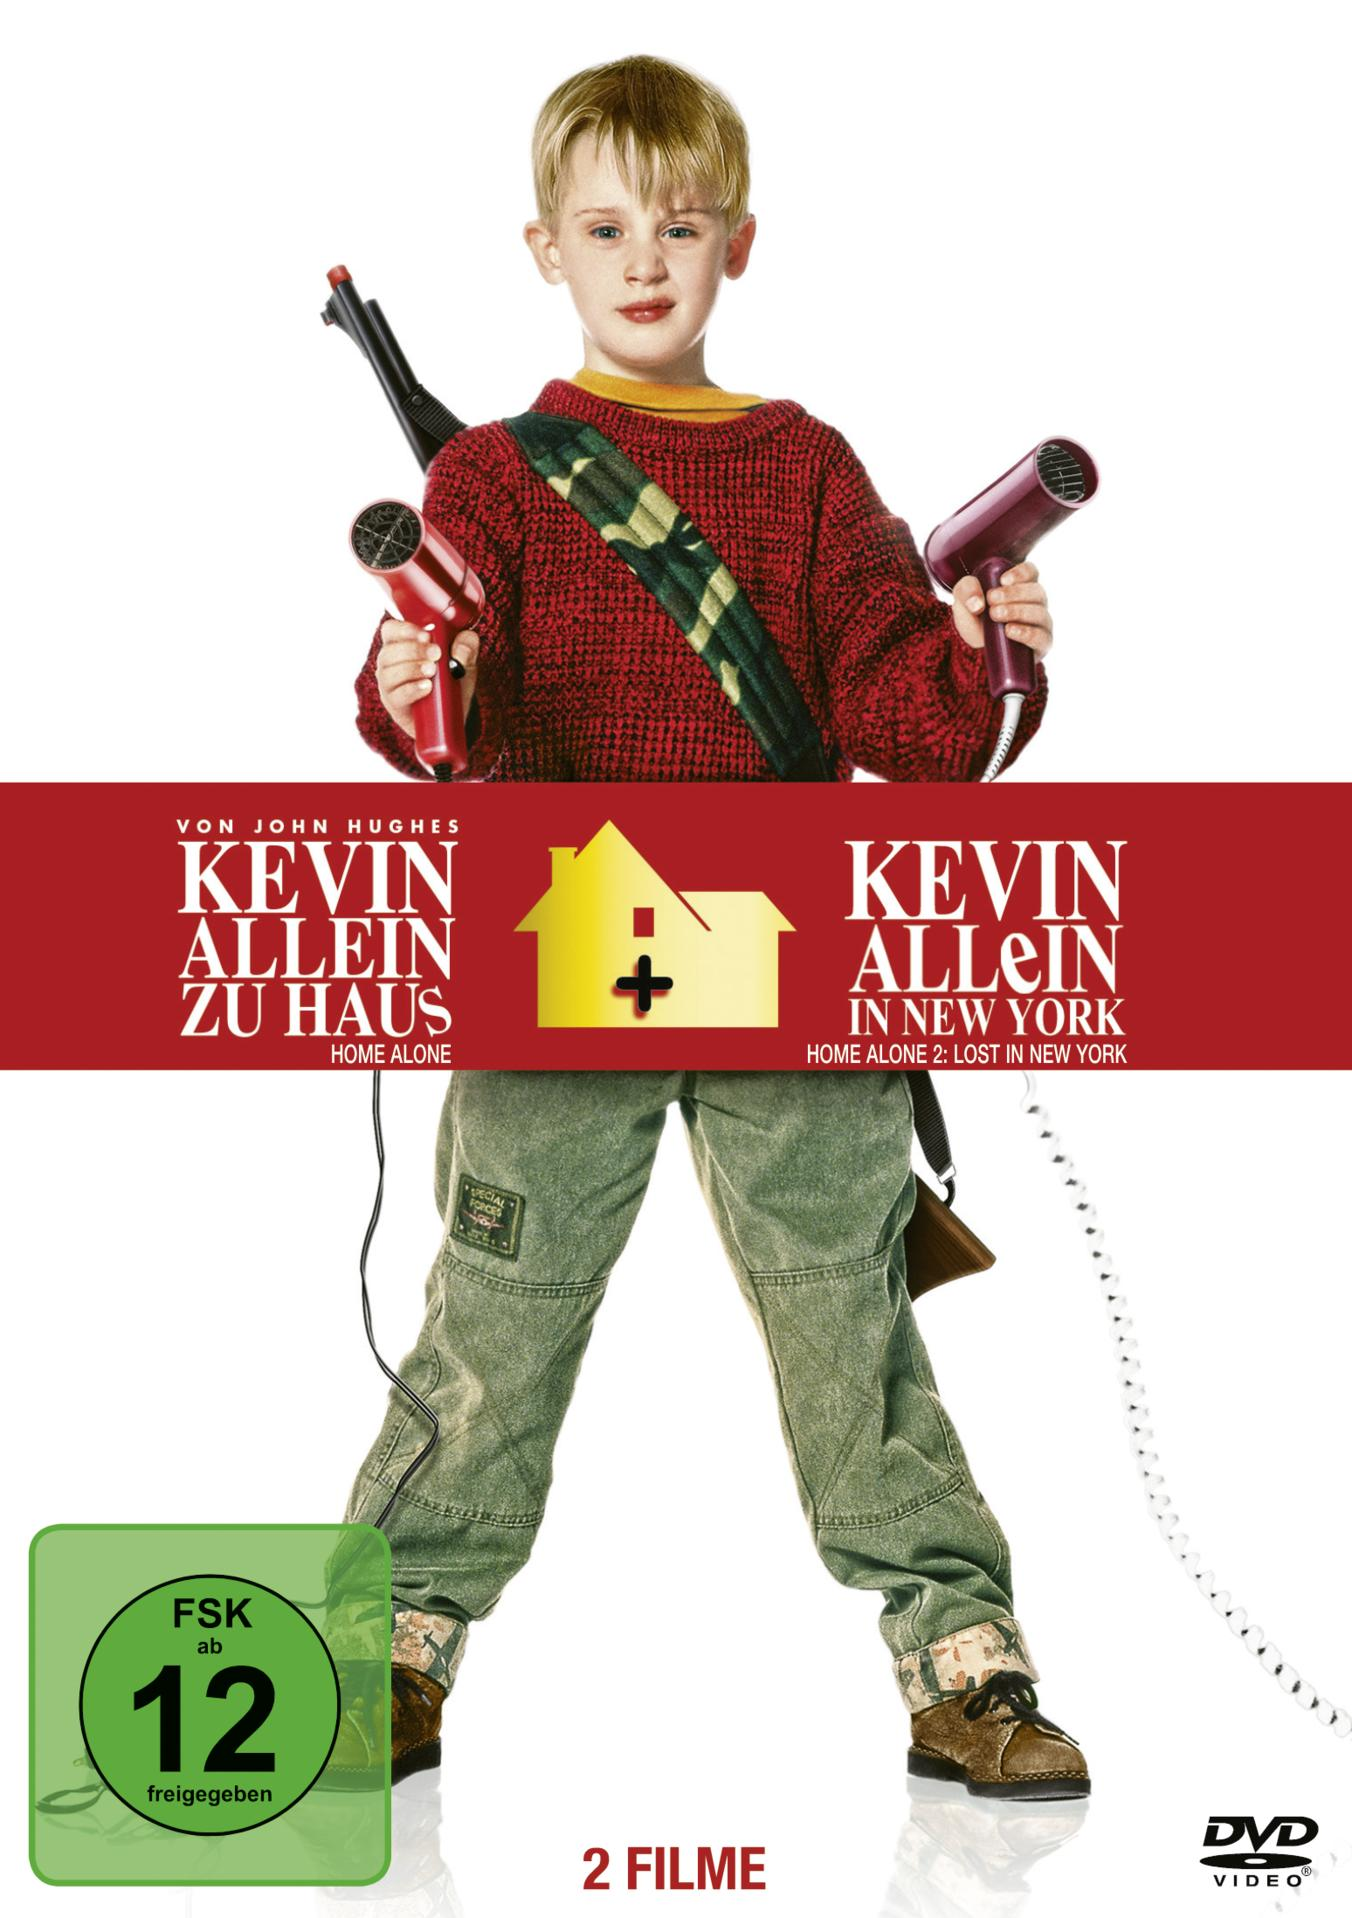 Haus - Allein in / Kevin - New York zu Allein DVD Kevin